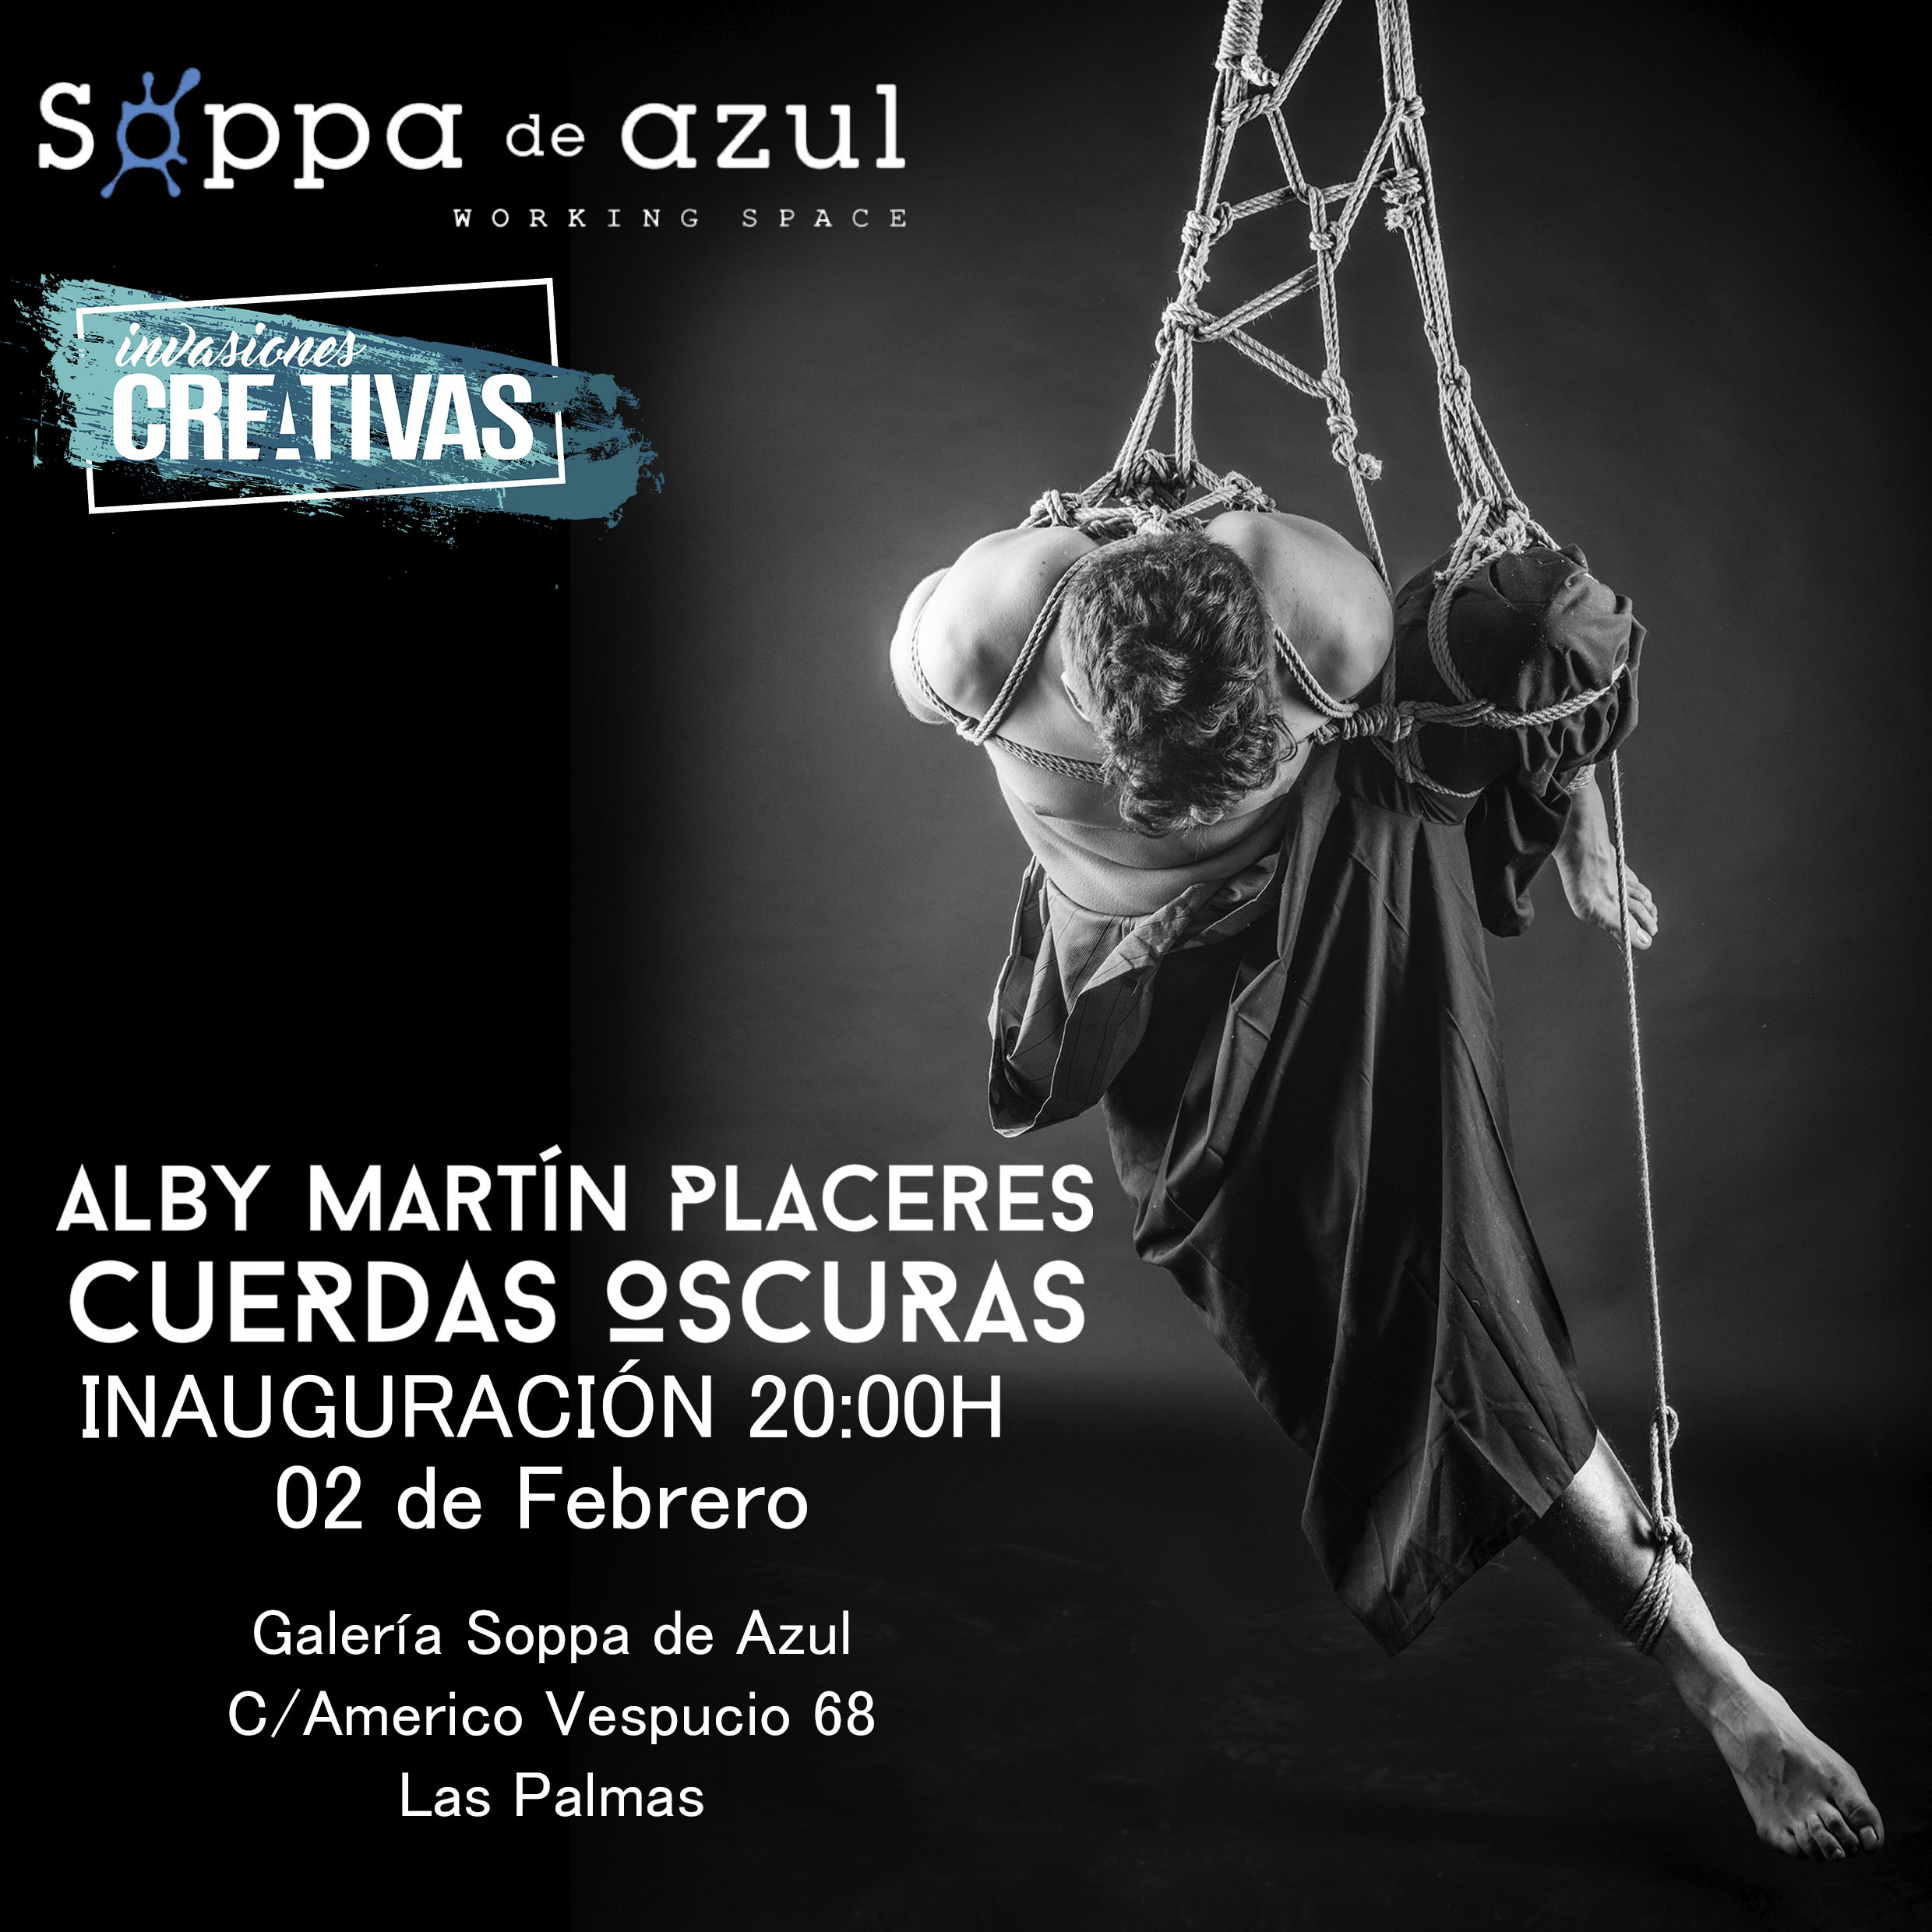 Inauguración de la exposición ‘Cuerdas Oscuras’ del fotógrafo Alby Martín en Soppa de Azul